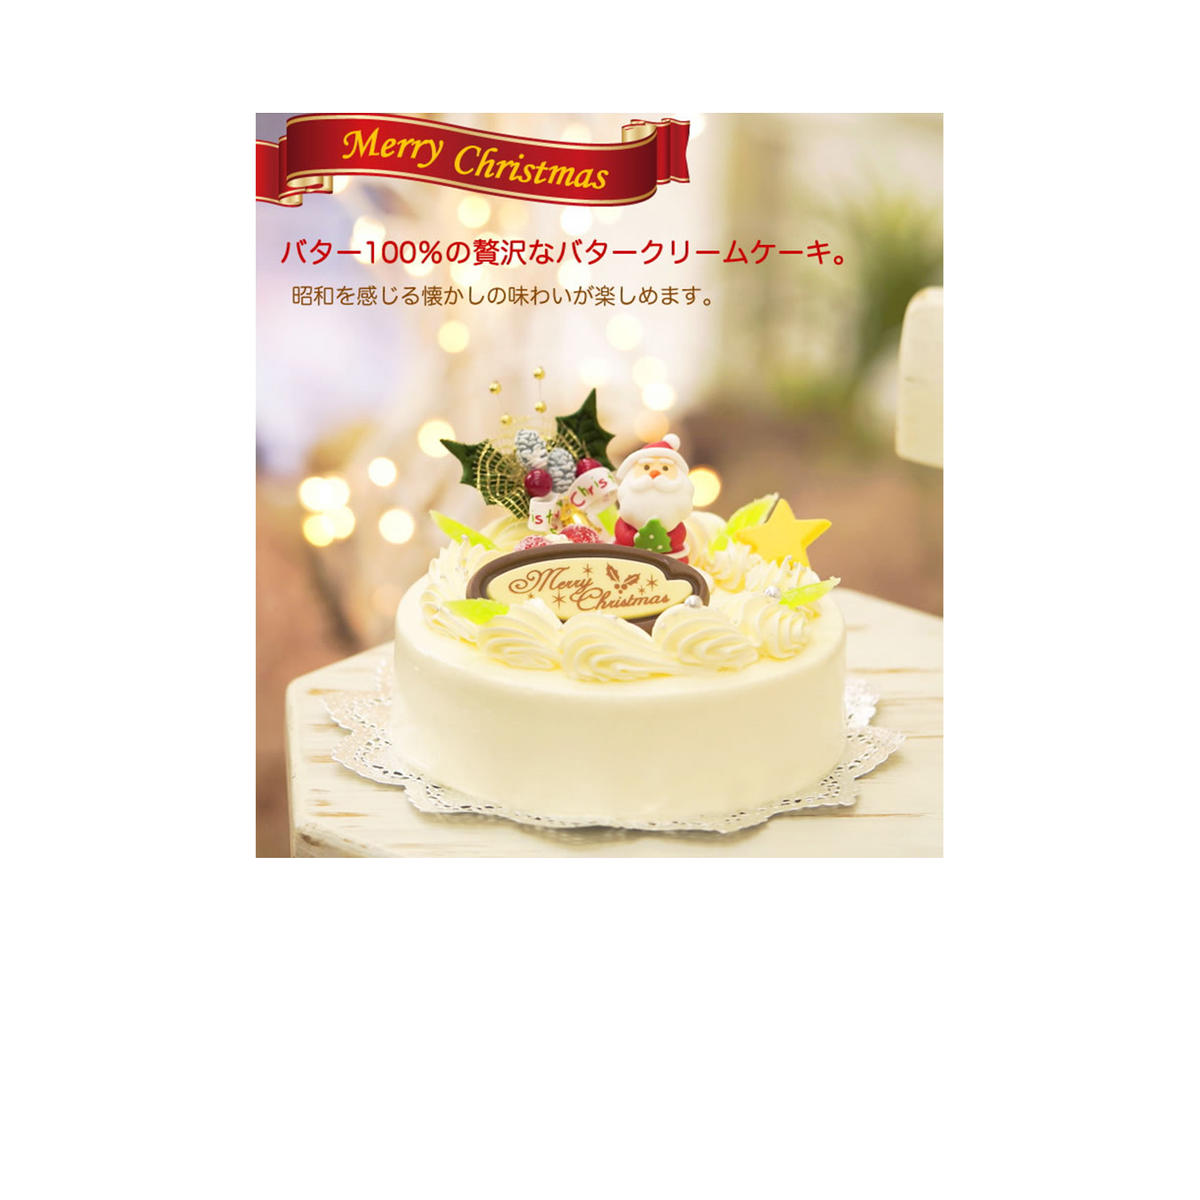 北海道・新ひだか町のクリスマスケーキ『クリスマスバター』懐かしバタークリームケーキ[お届け予定:12/20〜12/24]冷凍発送